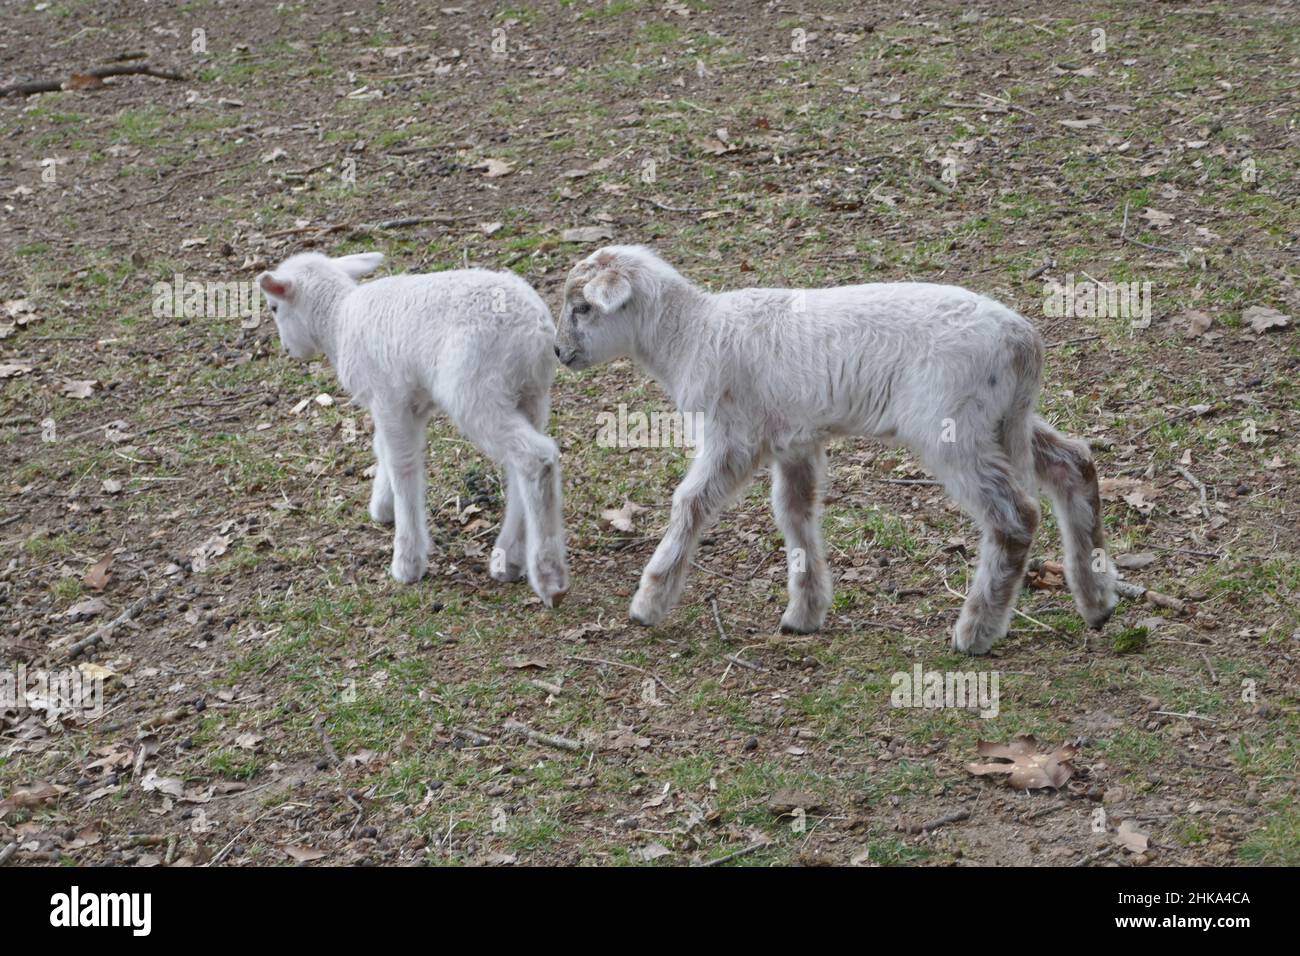 Deux agneaux de moutons Kempische Heath traversent ensemble la réserve naturelle. Banque D'Images